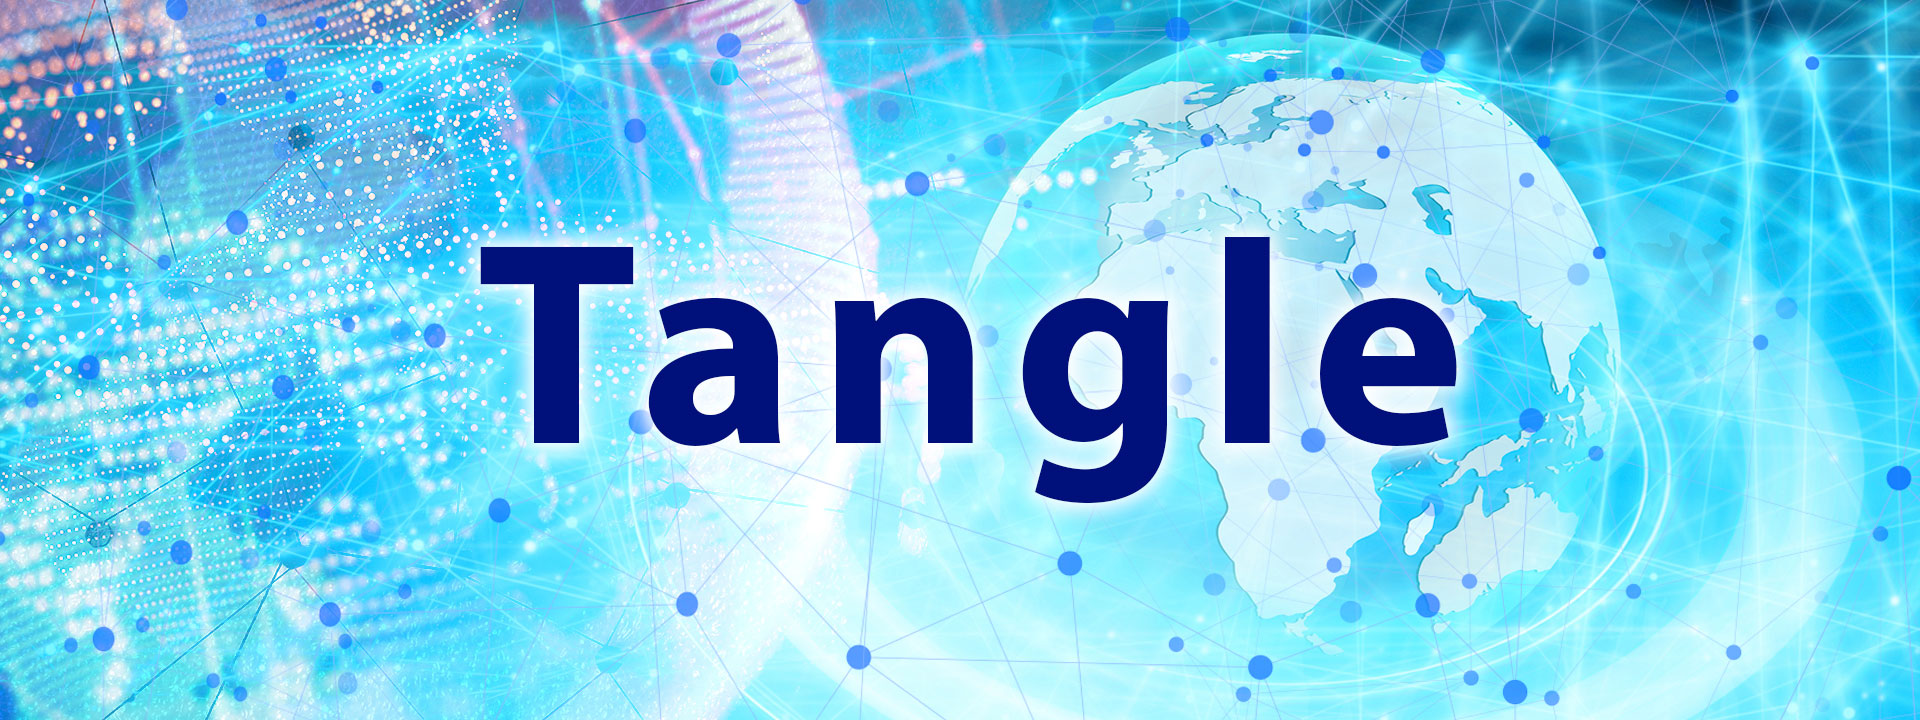 tangle - artech digital - 04